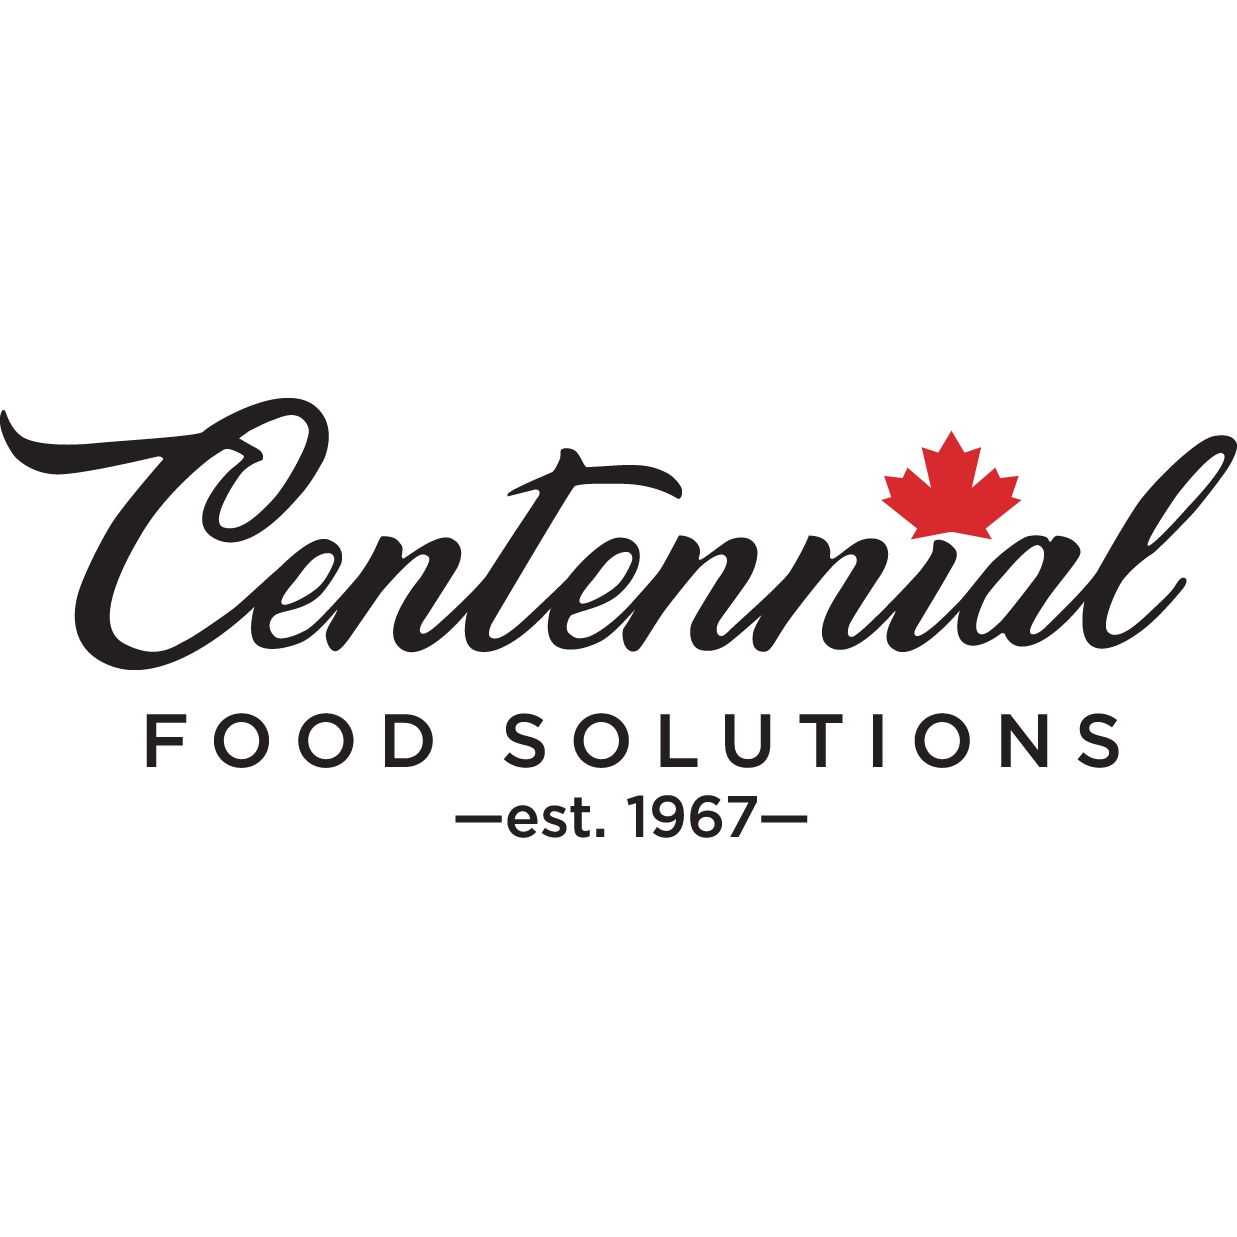 Centennial Food Solutions